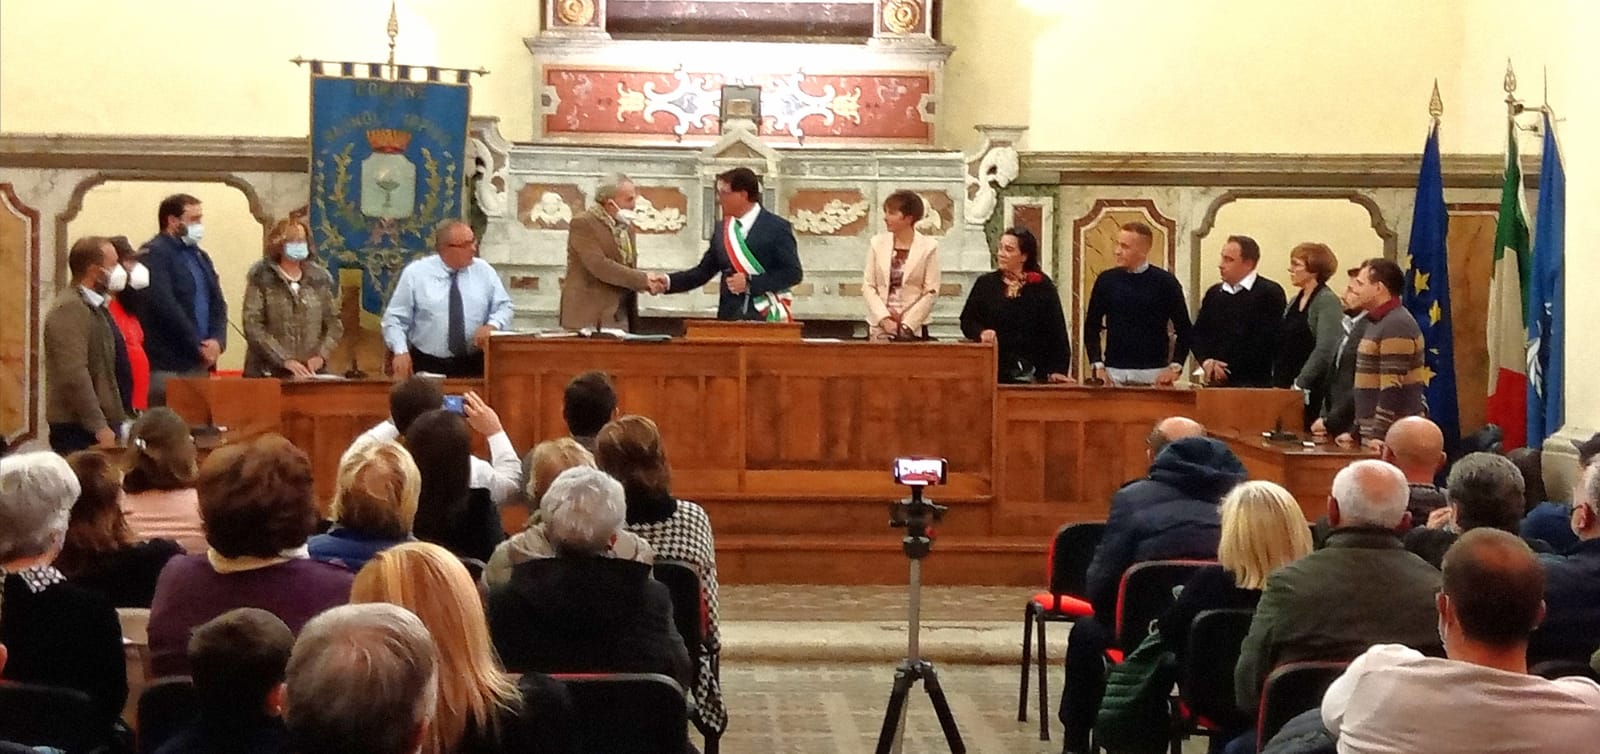  Bagnoli Irpino - PUC e PAF,  il sindaco  Nigro apre un tavolo di confronto con la  minoranza 